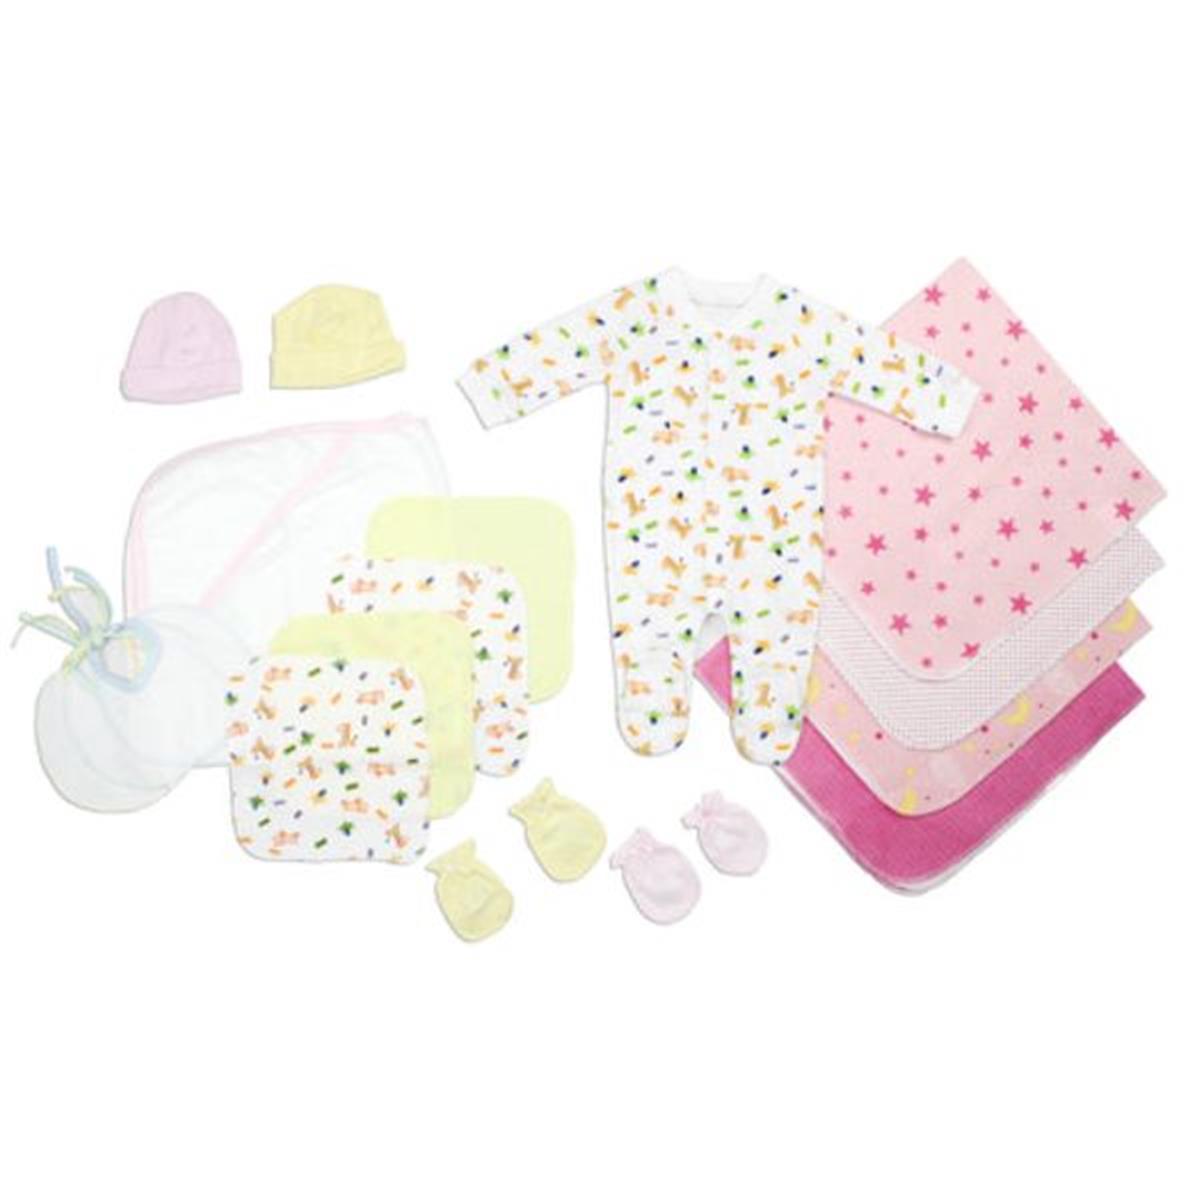 Bambini LS-0101 Newborn Baby Girls Layette Baby Shower Gift Set&#44; White & Pink - Newborn